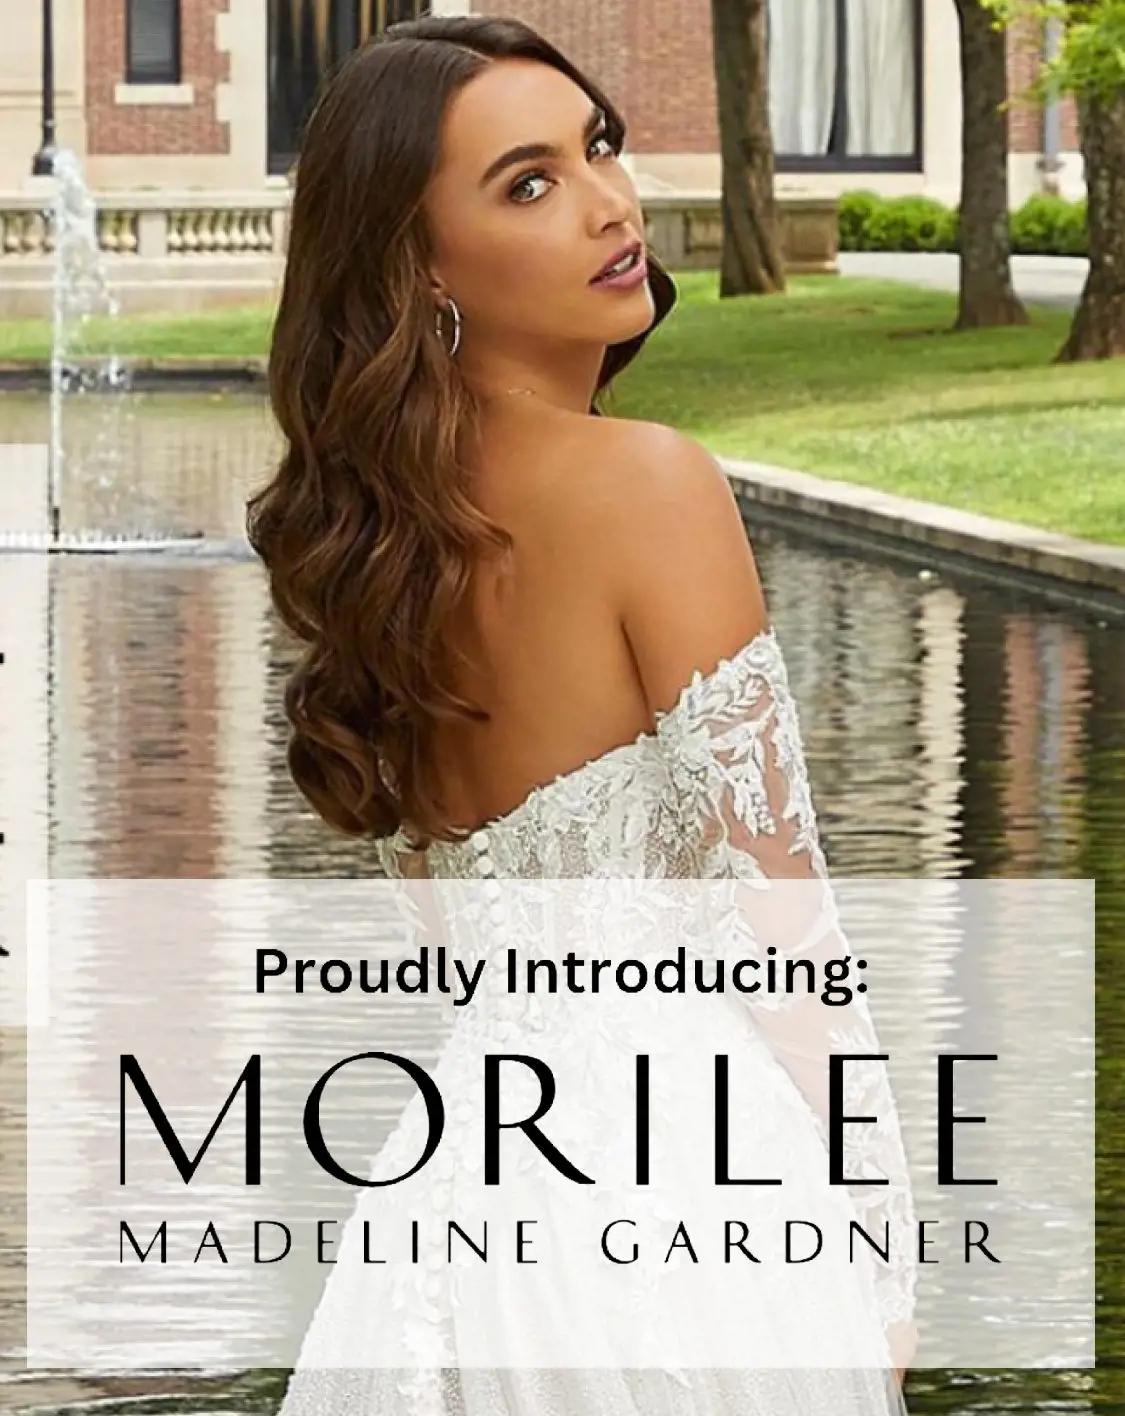 "Morilee" banner for mobile